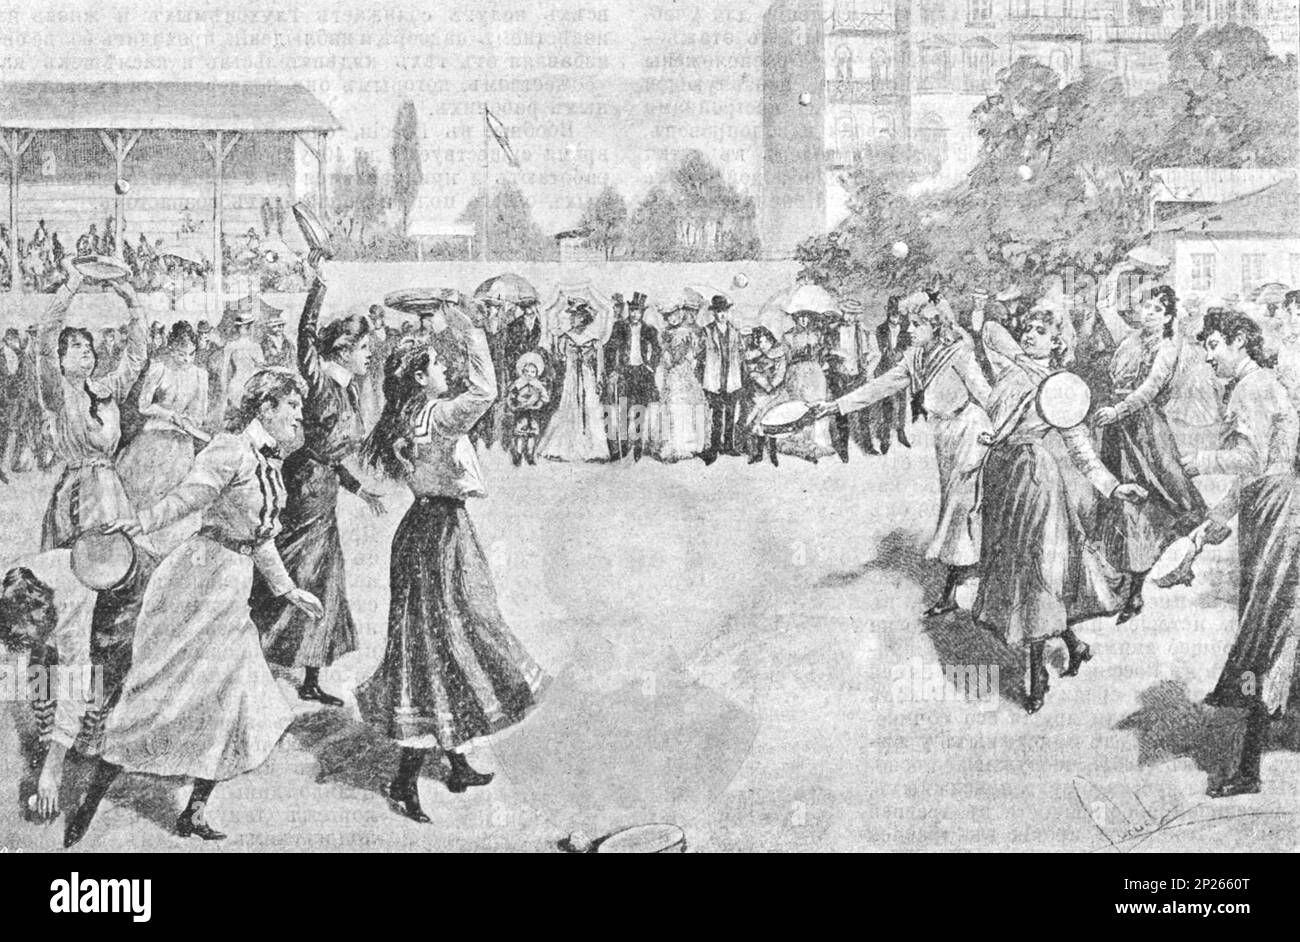 Tamburin-Spiel. Wettkampf im Friedenau-Park bei Berlin. Illustration aus dem frühen 20. Jahrhundert. Stockfoto